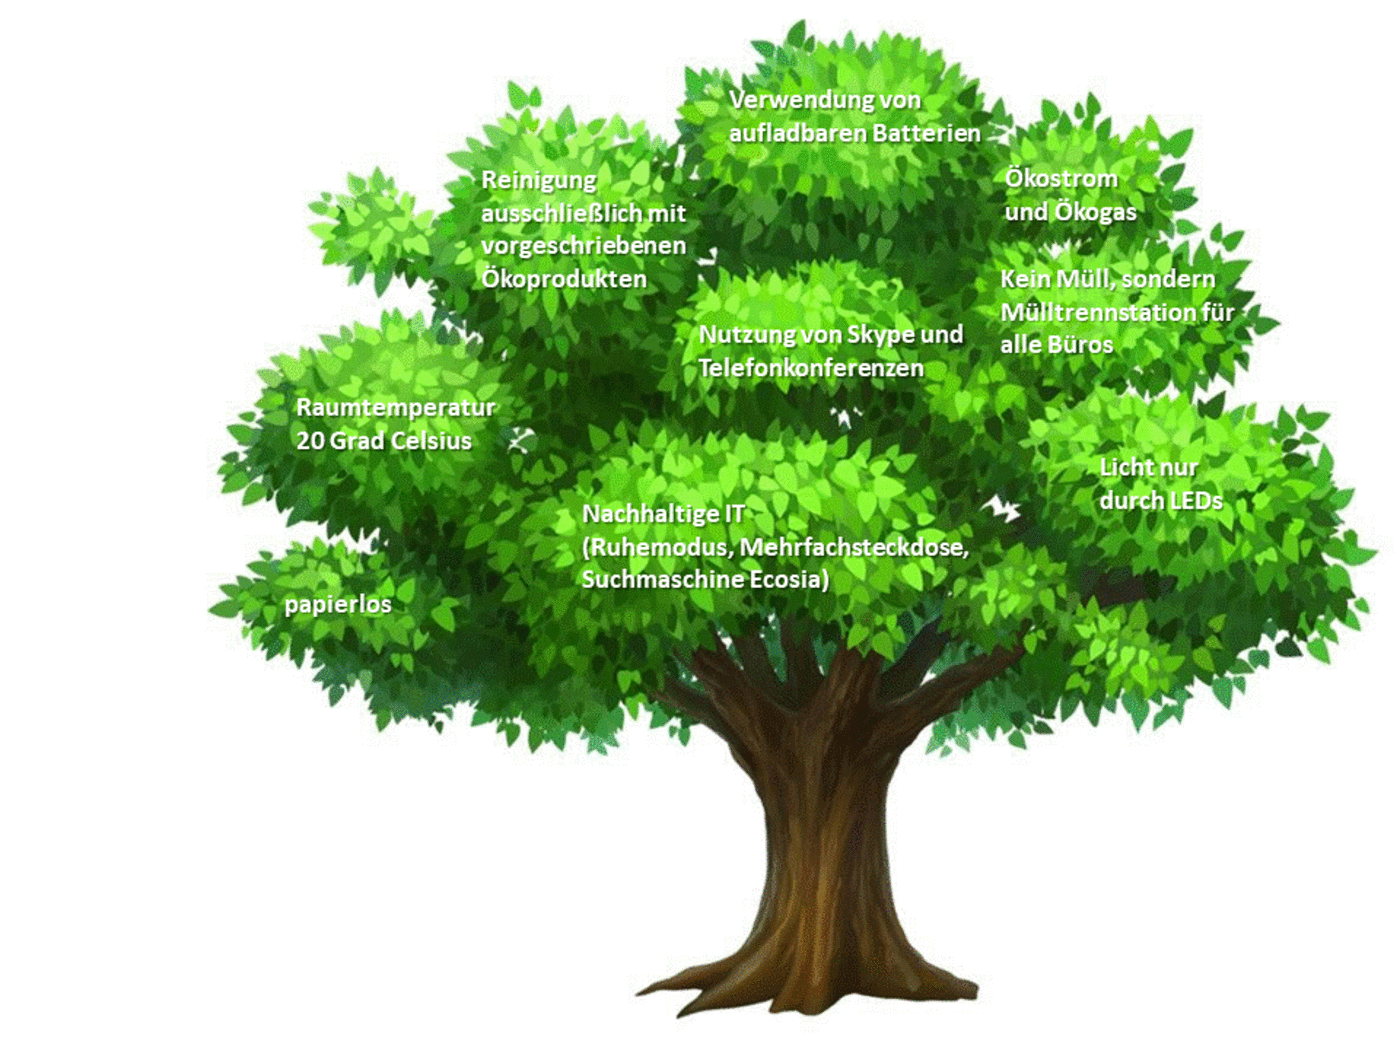 Дерево мультяшное